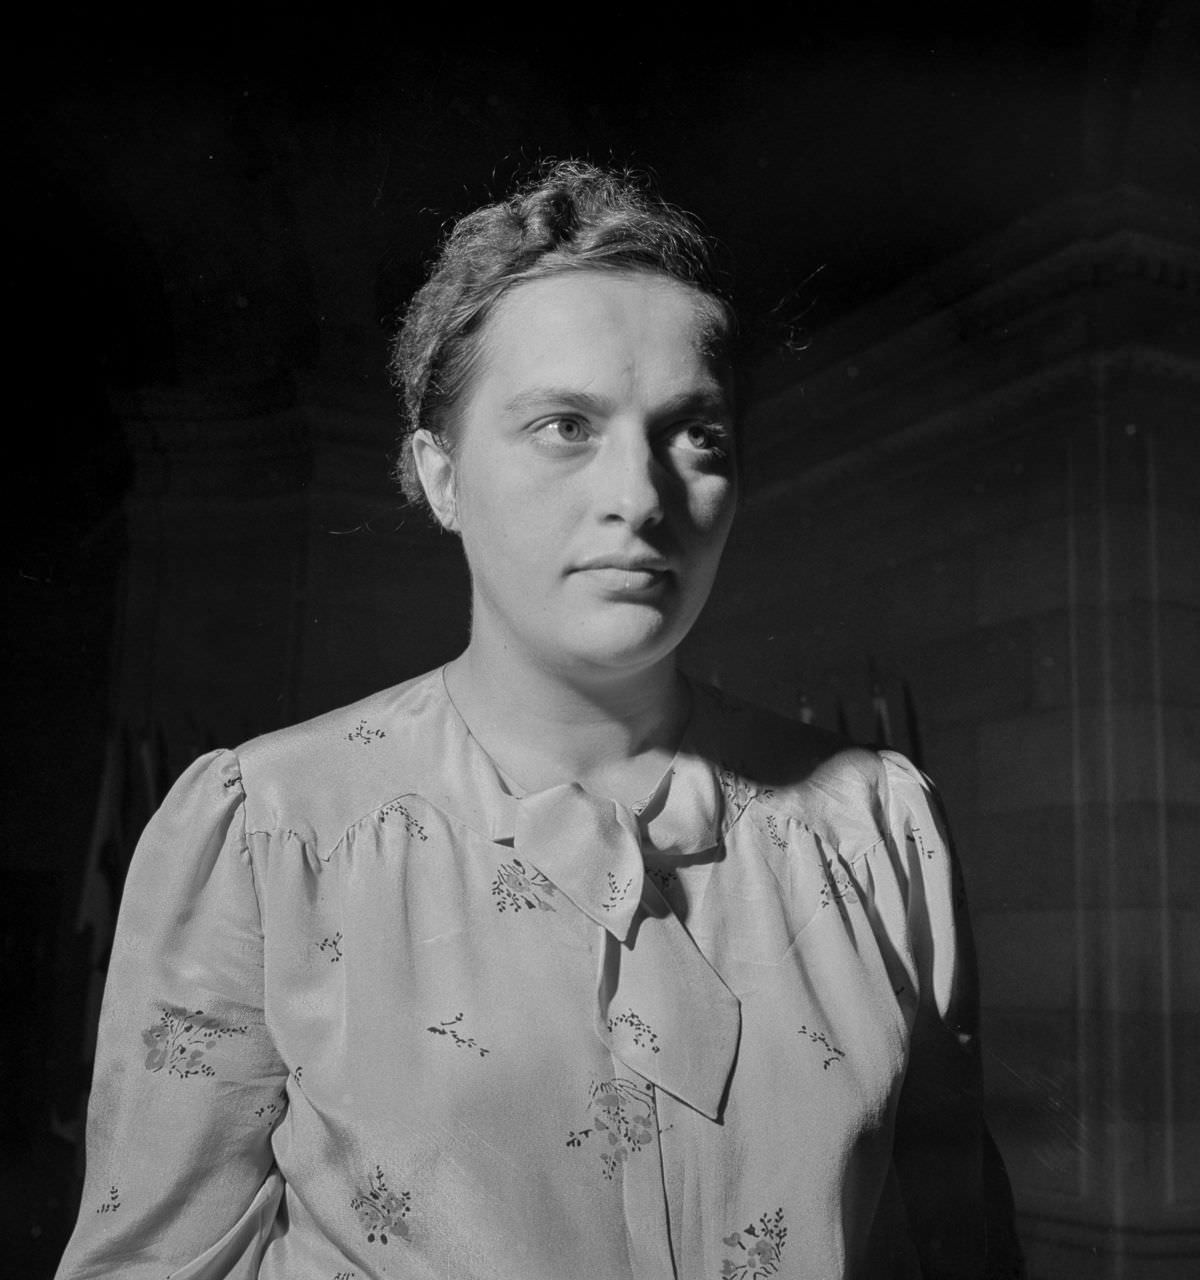 Pavlichenko during her visit to Washington, D.C. 1942.